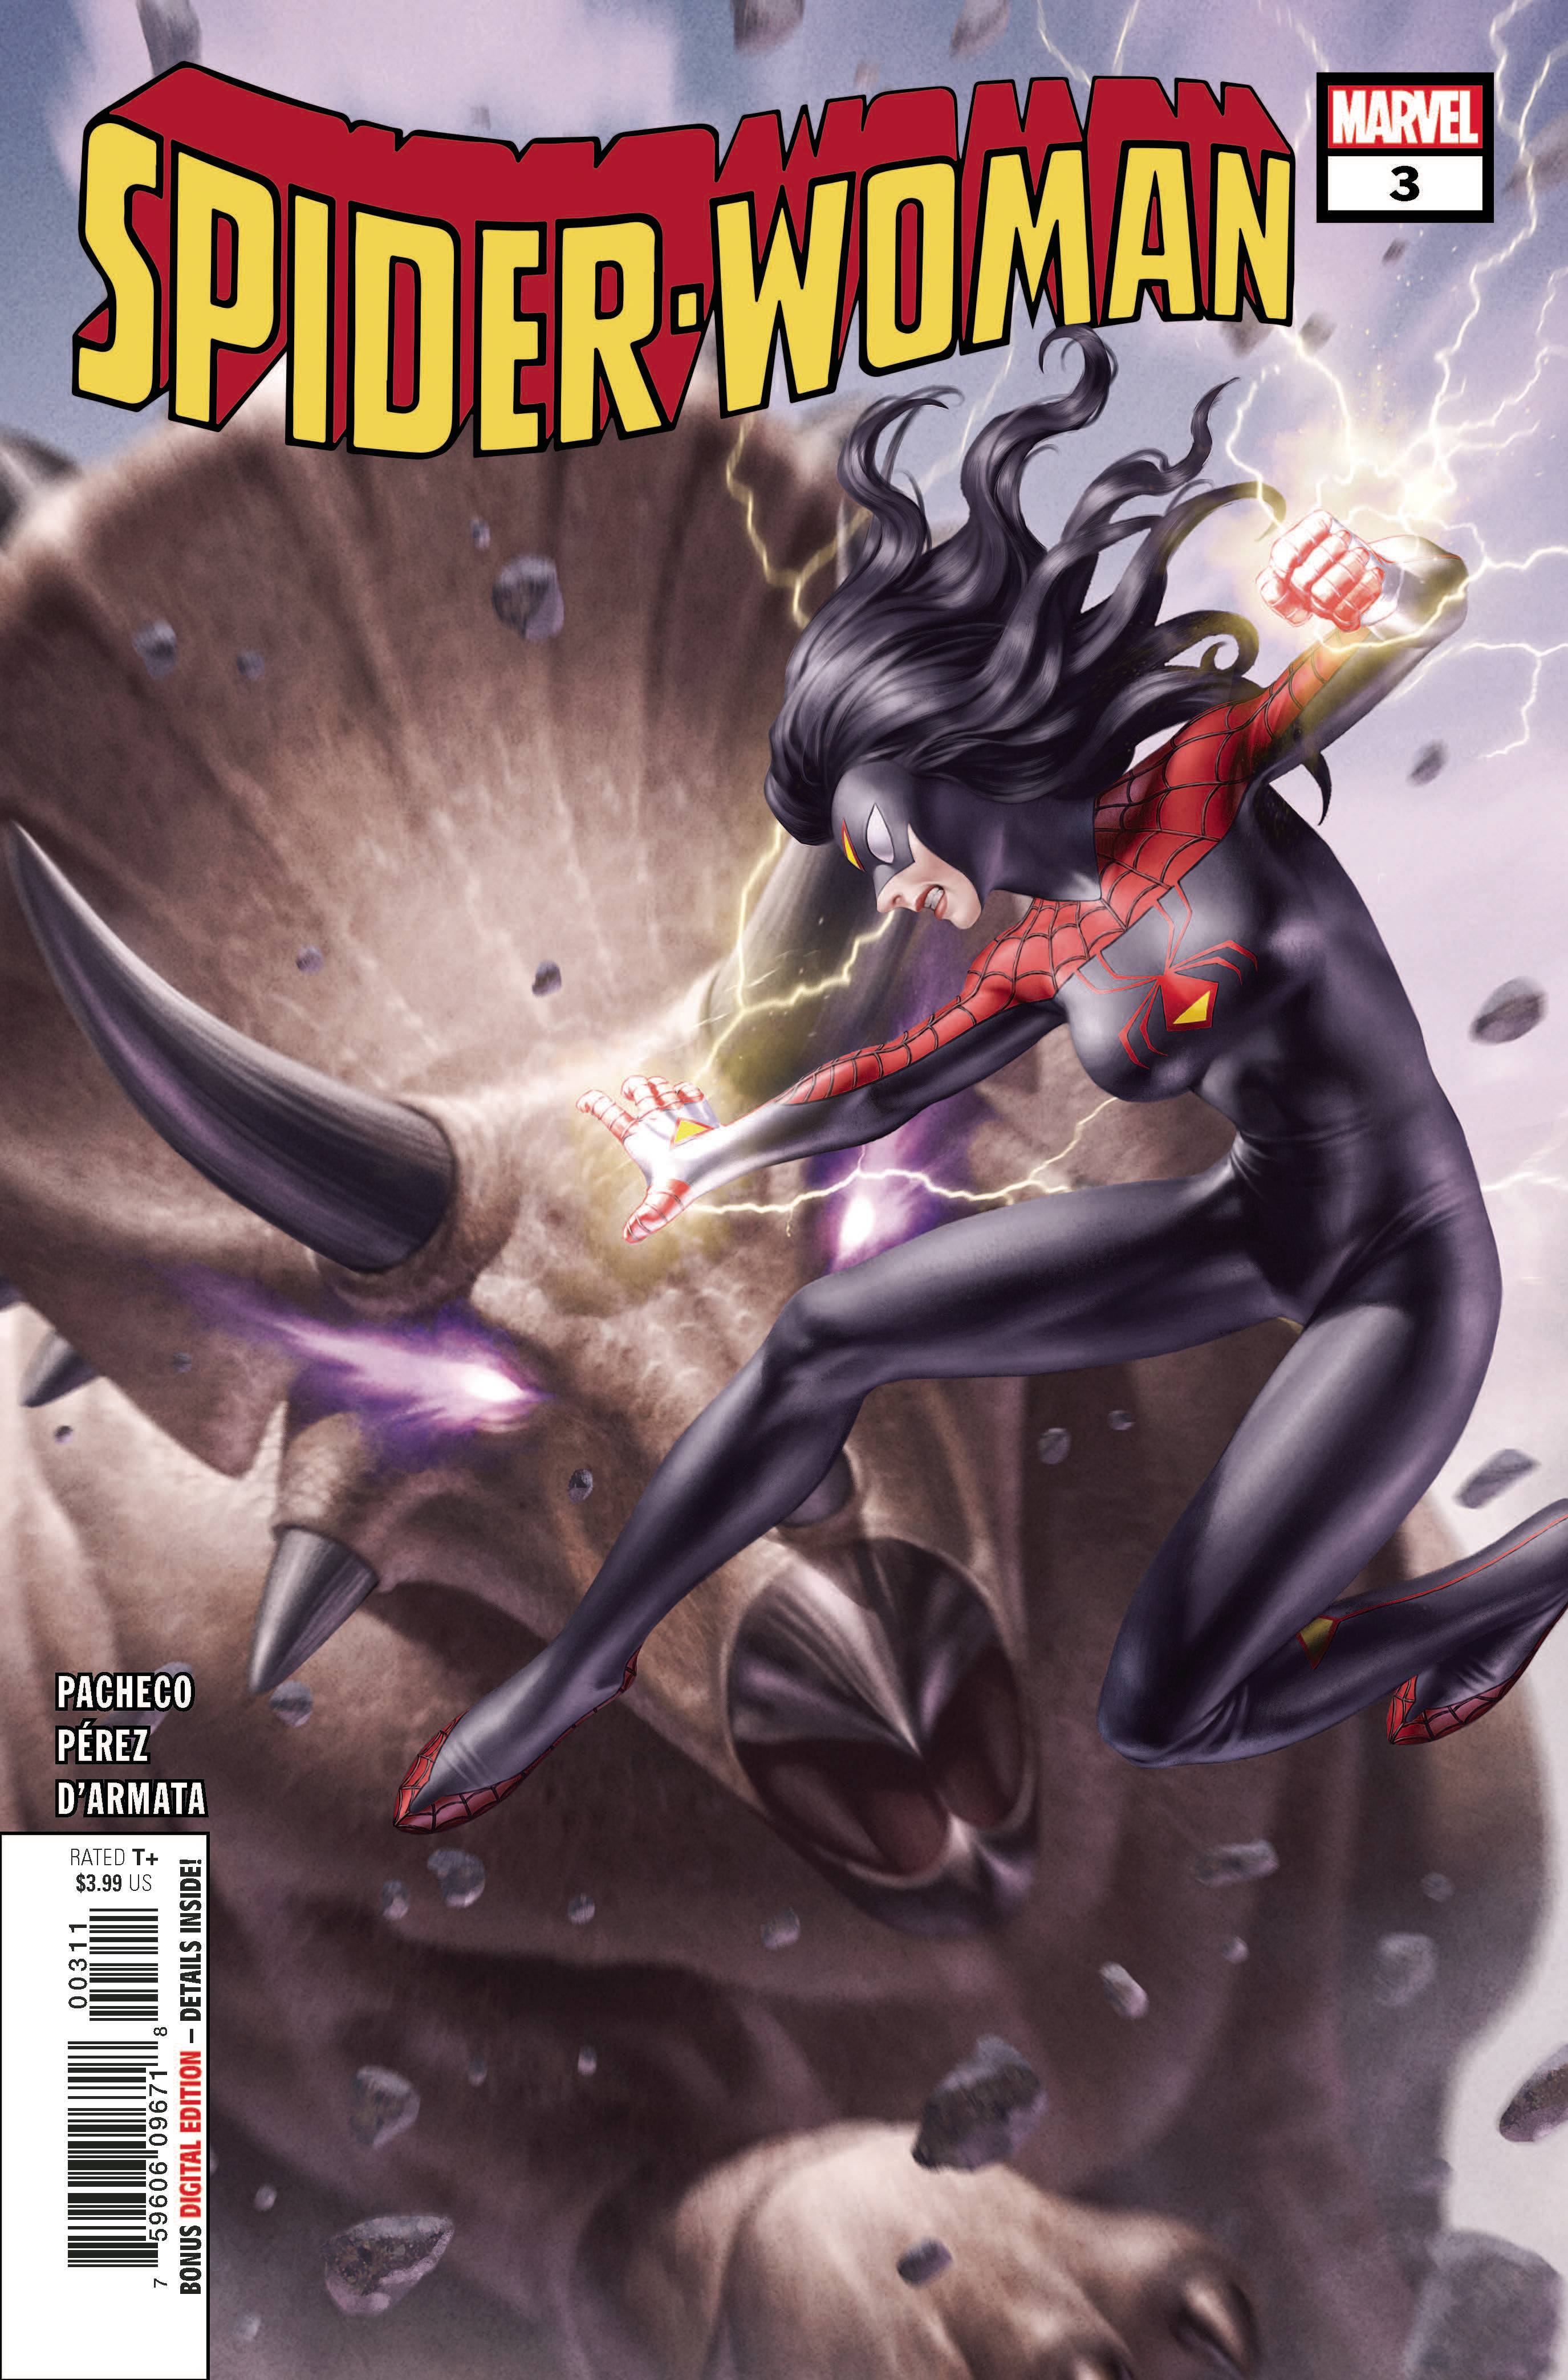 SPIDER-WOMAN #3 | L.A. Mood Comics and Games